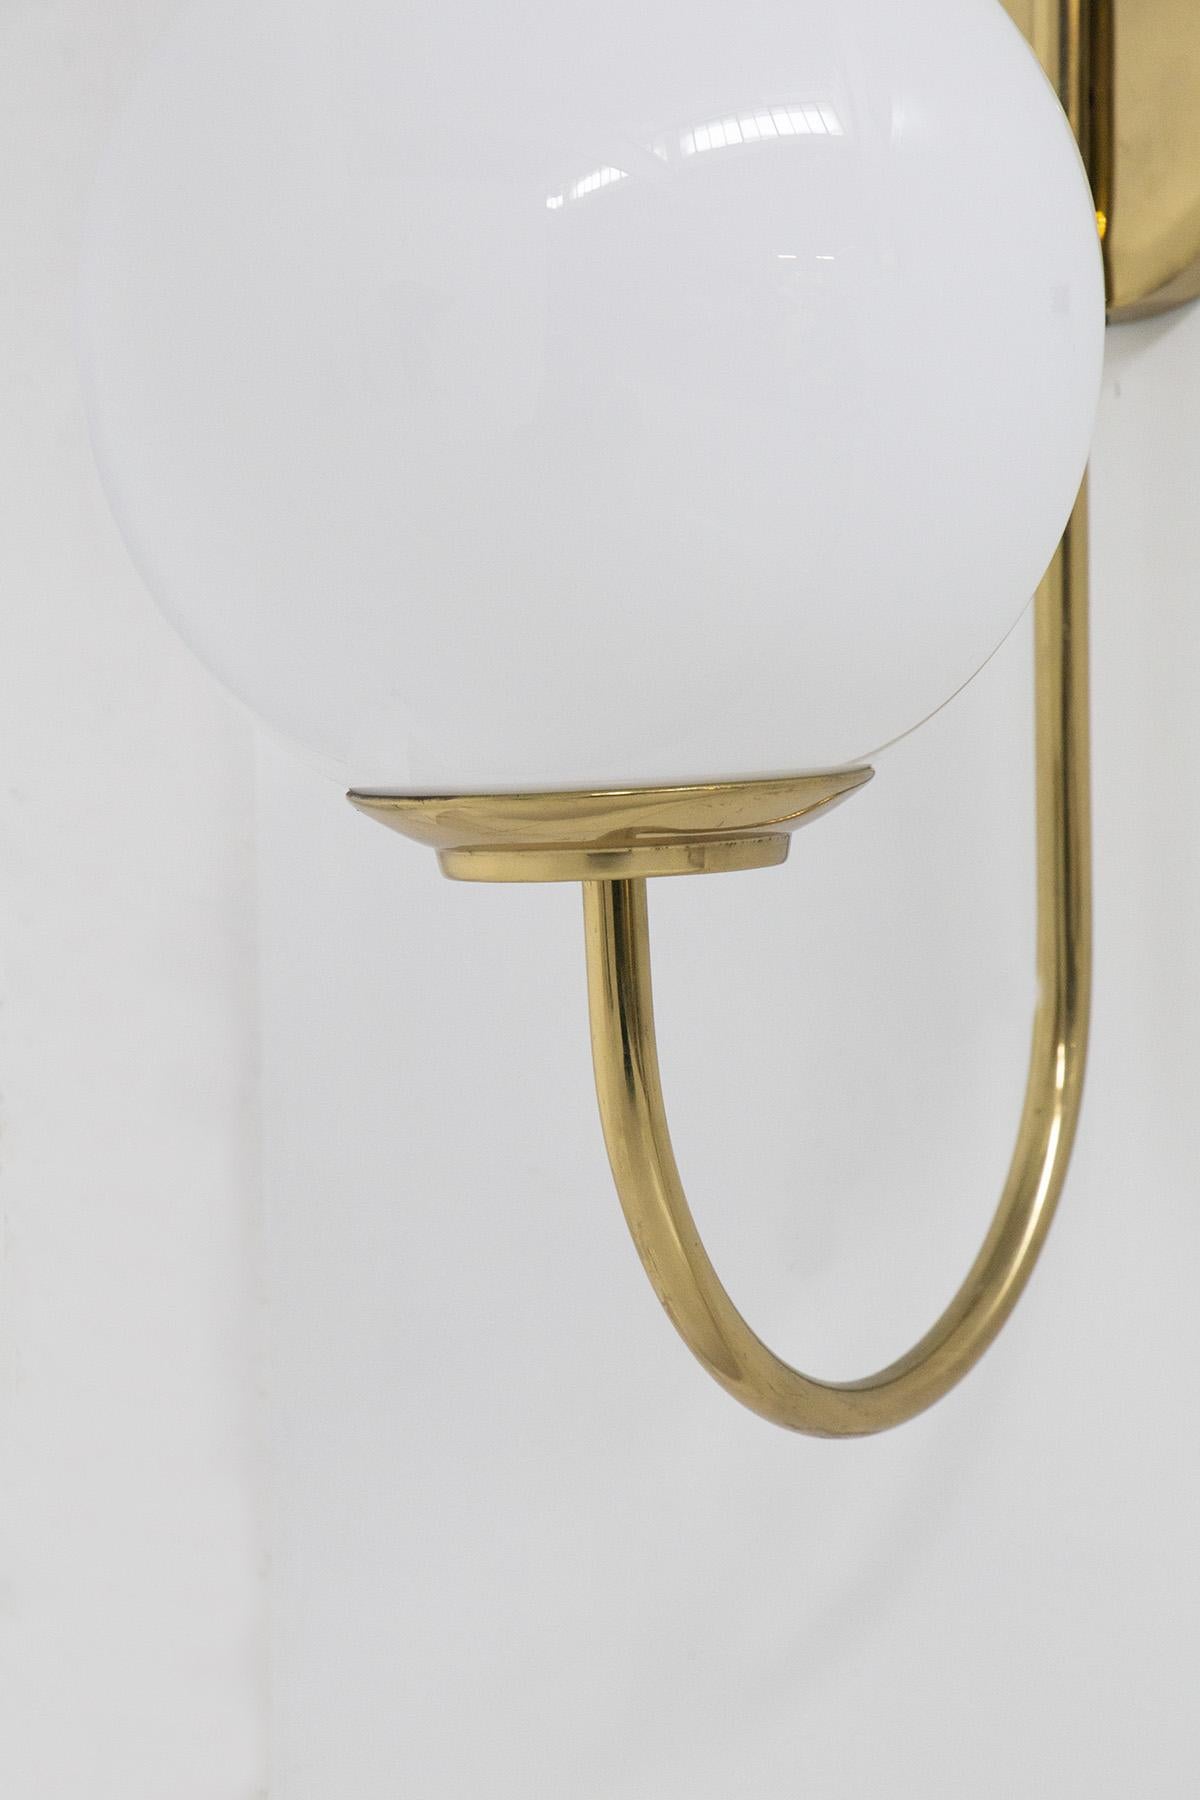 Brass Luigi Caccia Dominioni Wall Lamp for Azucena For Sale